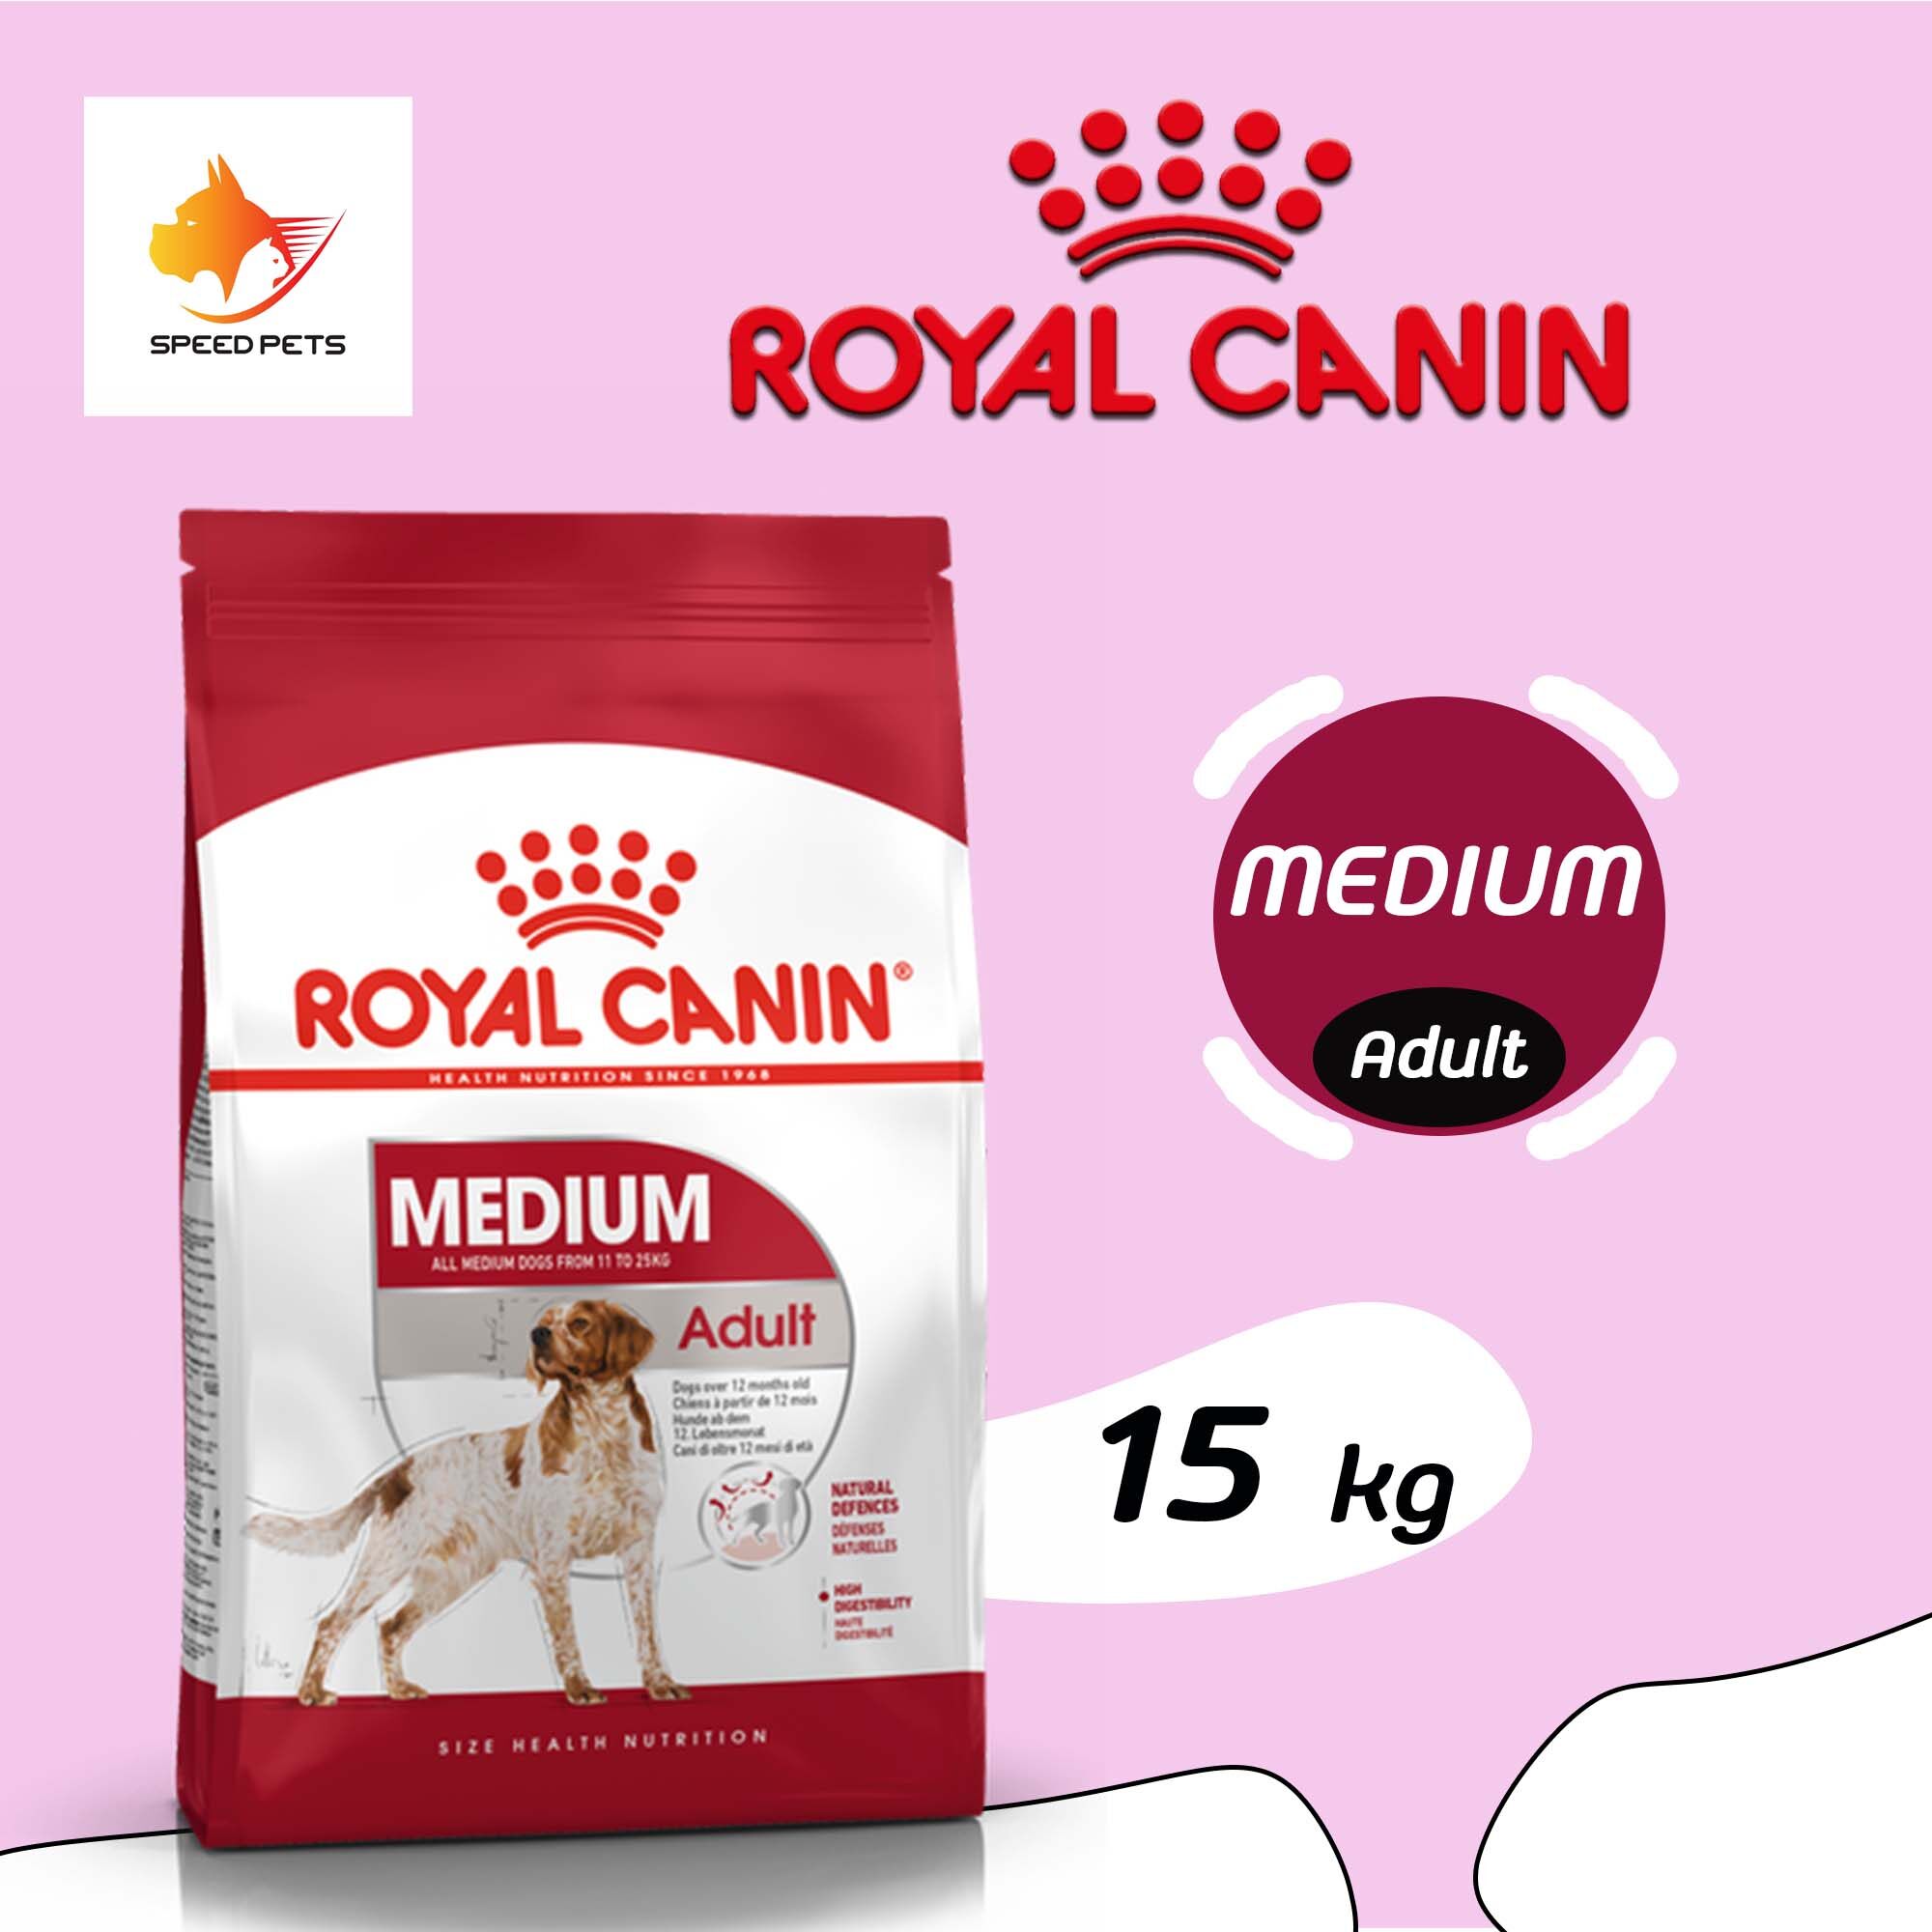 Royal Canin Medium Adult dog 15 kg โรยัล คานิน อาหารสุนัข พันธุ์กลาง แบบเม็ด 15 kg ( สีแดง )